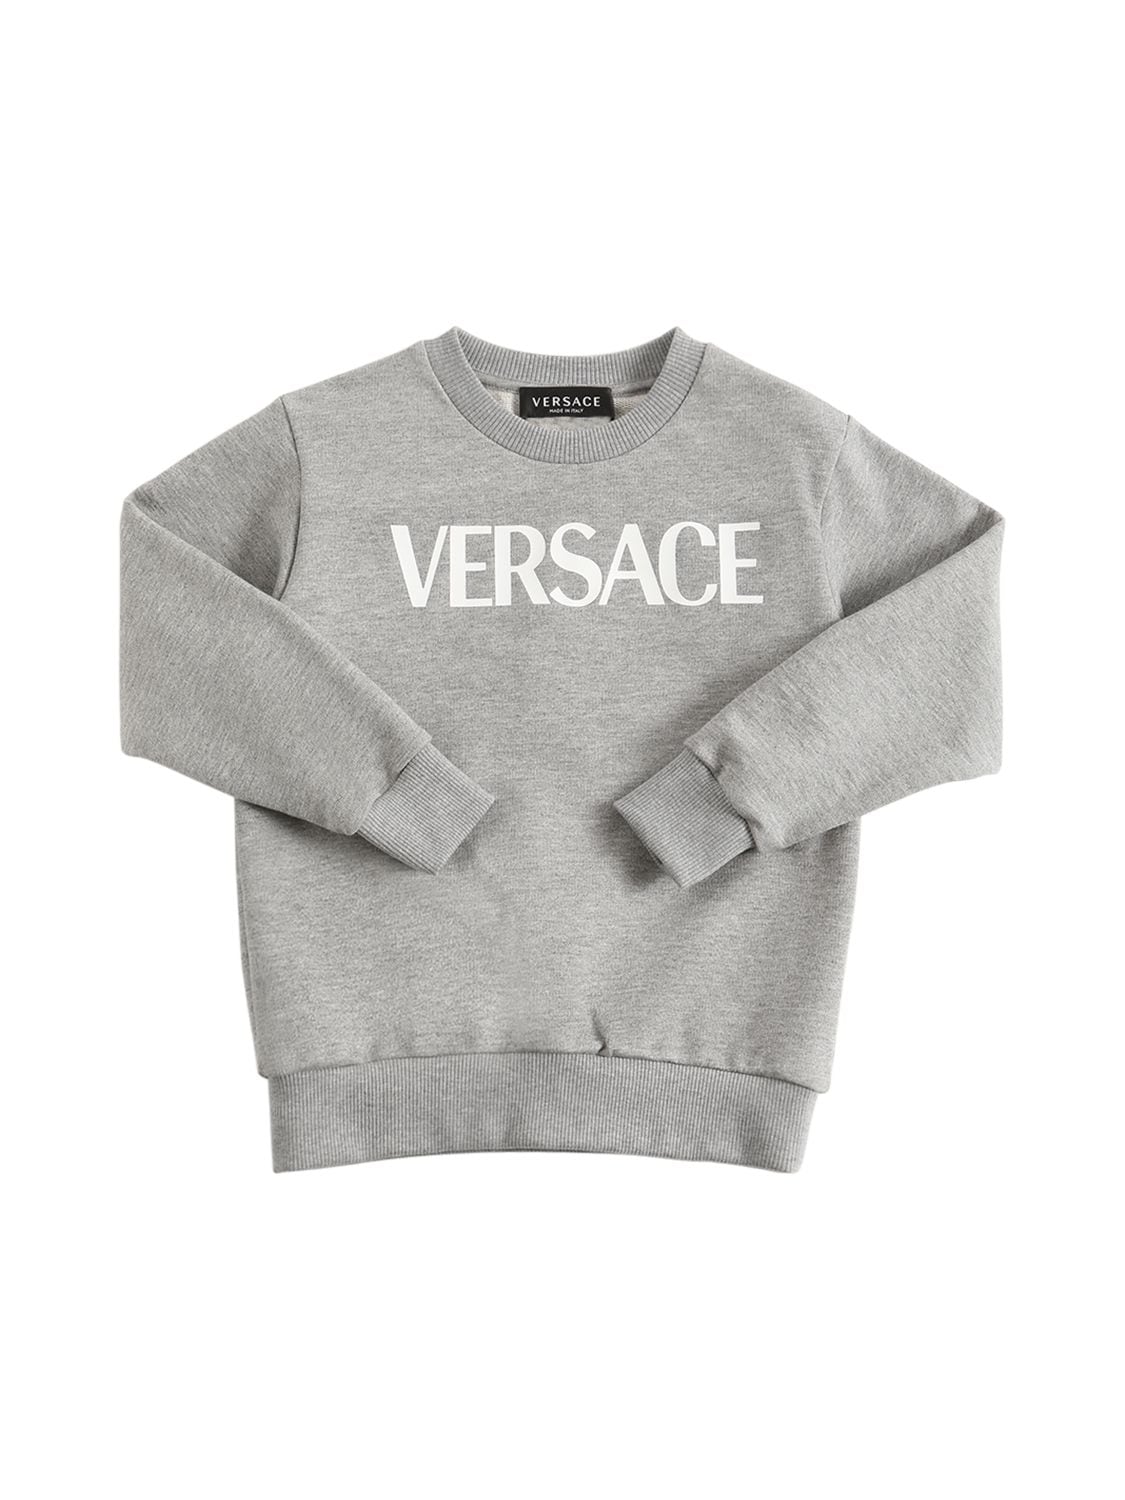 Versace Kids' Logo Print Cotton Sweatshirt In Grey